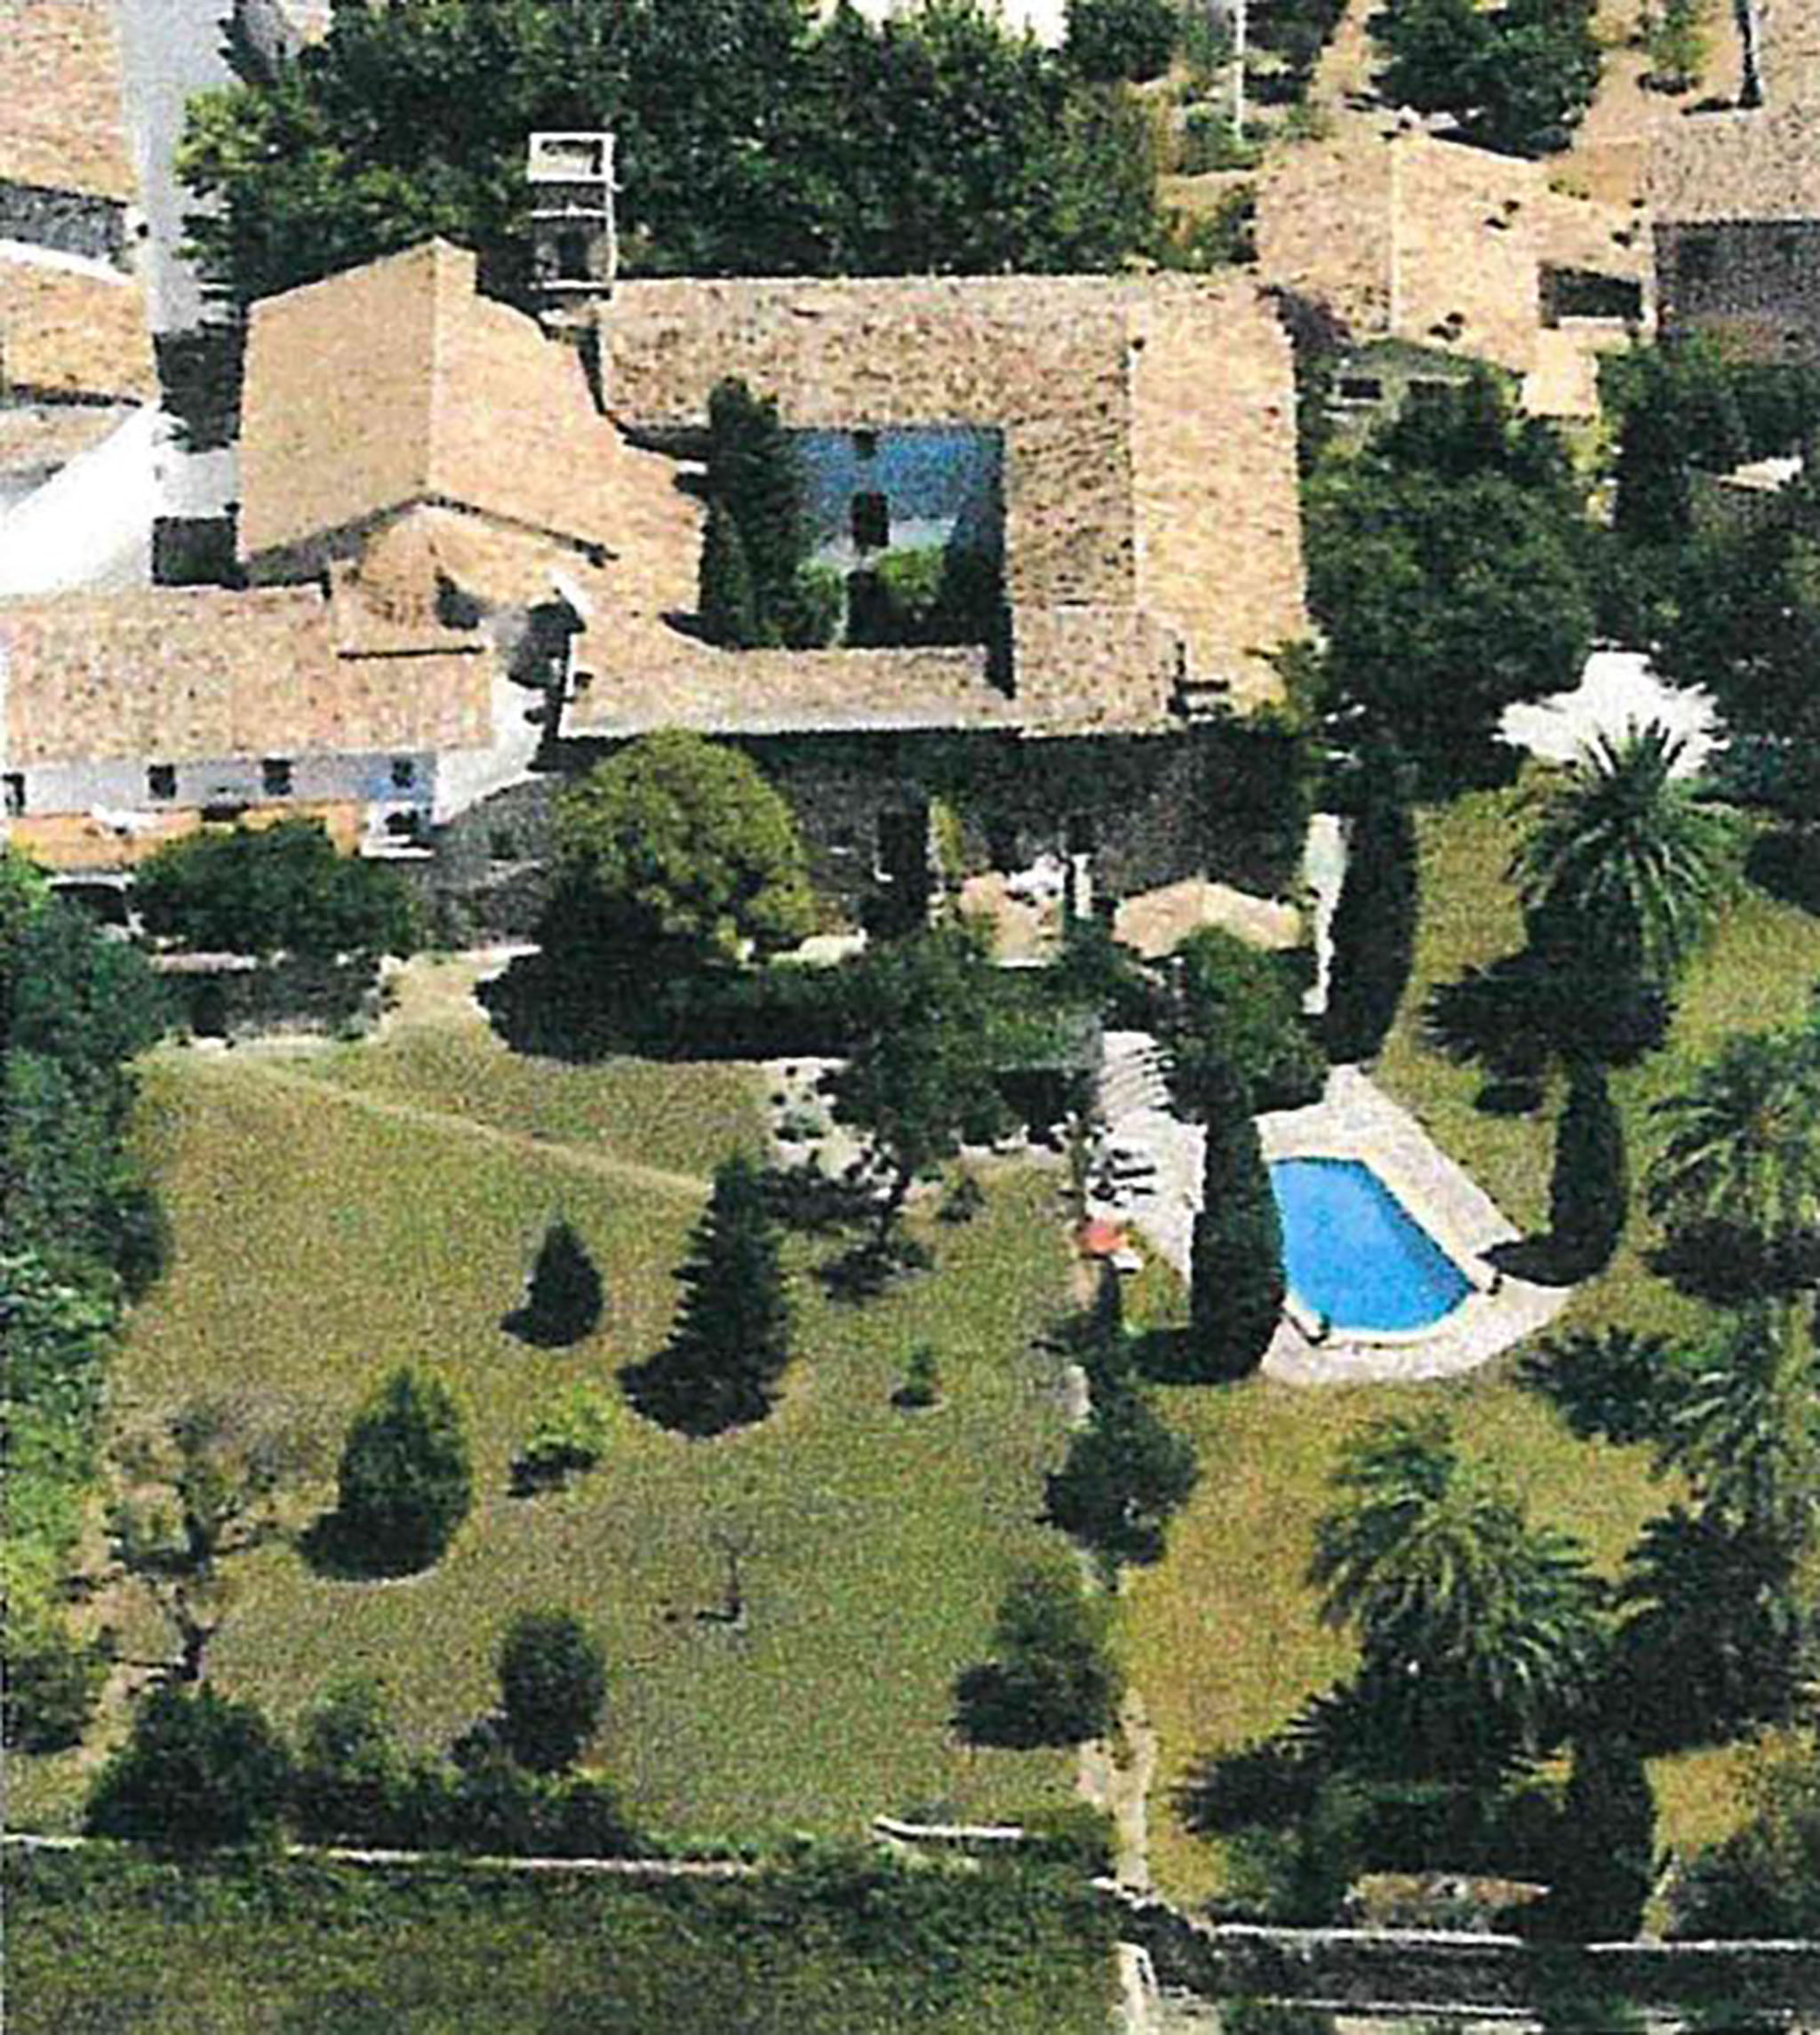 El convento desde arriba con jardines adyacentes en una fotografía del informe de venta